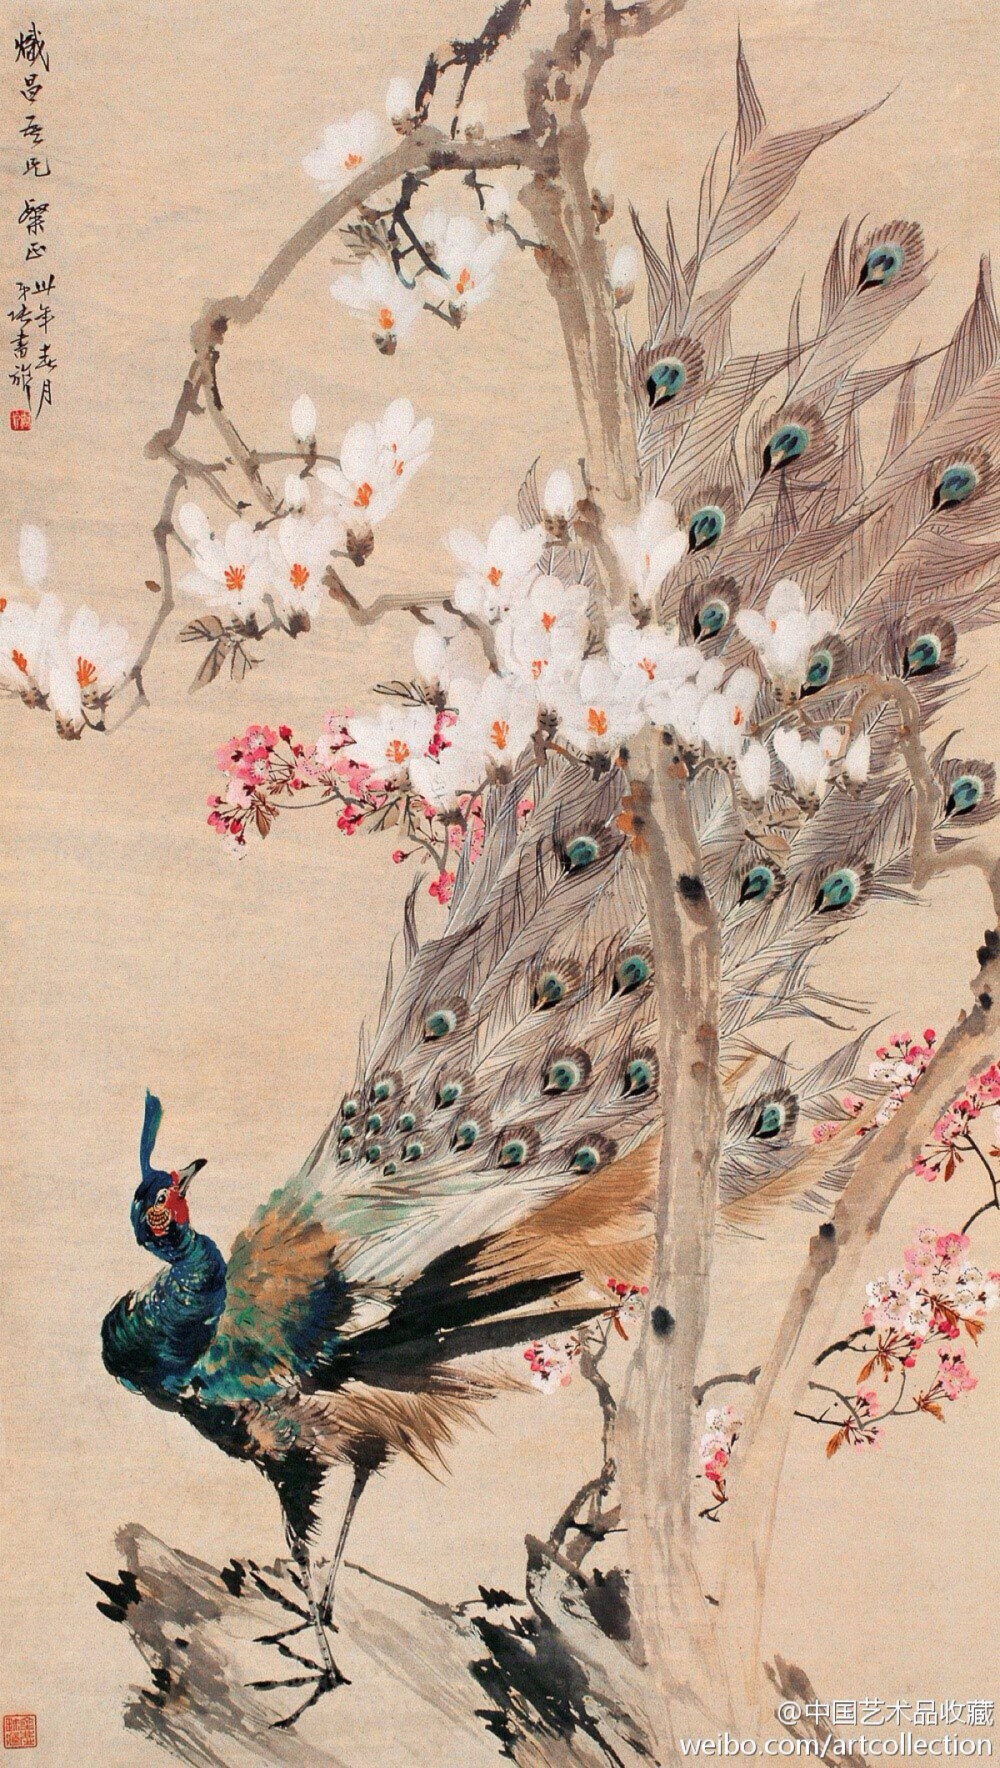 【 张书旂 《花鸟图》 】张书旂（1900-1957）的花鸟画，继承了中国画以形写神的传统创作方法。张书旂觉得师古人、师前人莫如师自然更生动。他每于清晨薄暮，蹲身秘处，窥视鸟儿之神态，故所作花鸟画，纯从写生中得来，动作的自然，色彩的正确，乃在写生之外，另有观察的工夫和心中意会的结果。